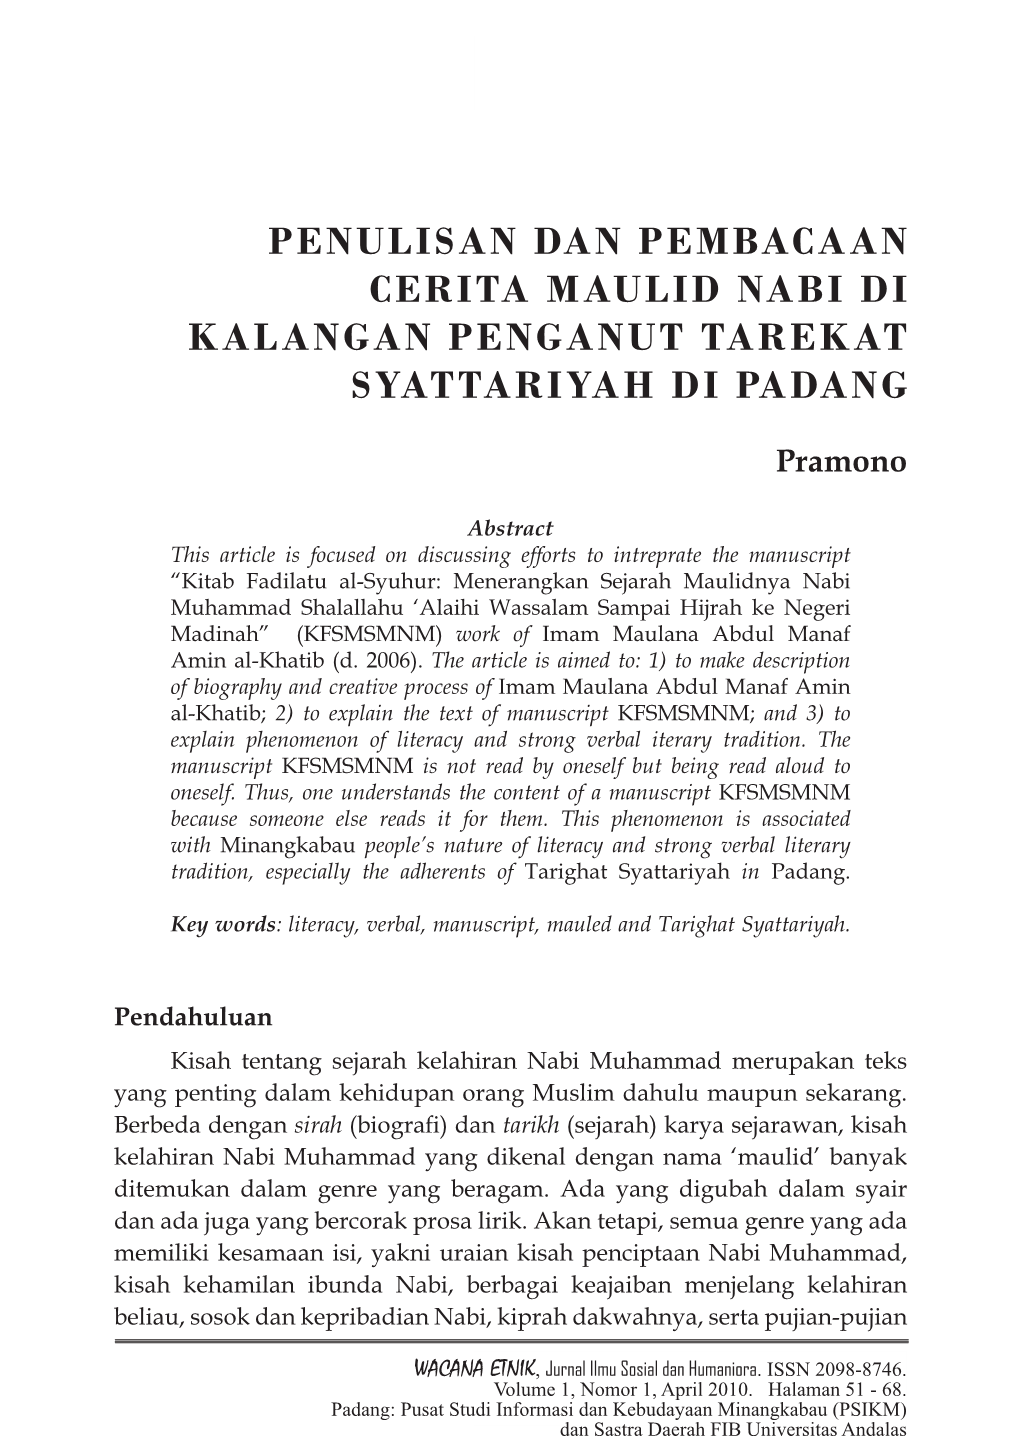 Penulisan Dan Pembacaan Cerita Maulid Nabi Di Kalangan Penganut Tarekat Syattariyah Di Padang